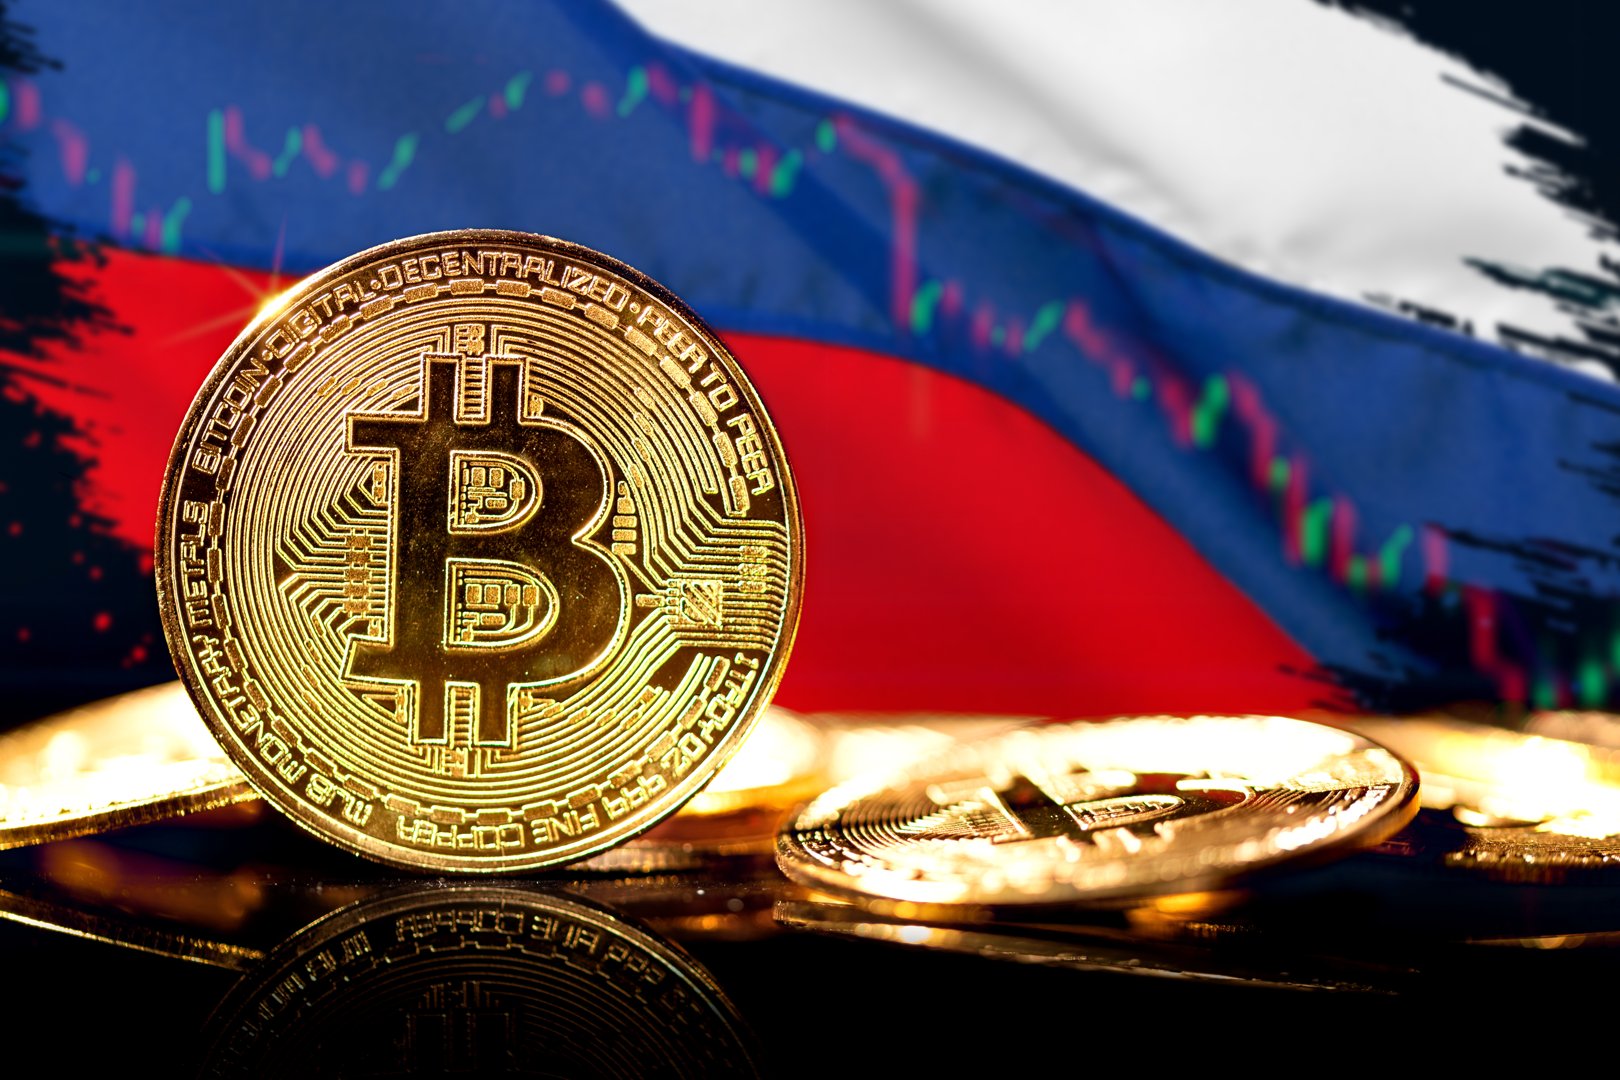 Représentations d'artiste d'un jeton Bitcoin, sur fond du drapeau russe et d'un graphique linéaire.